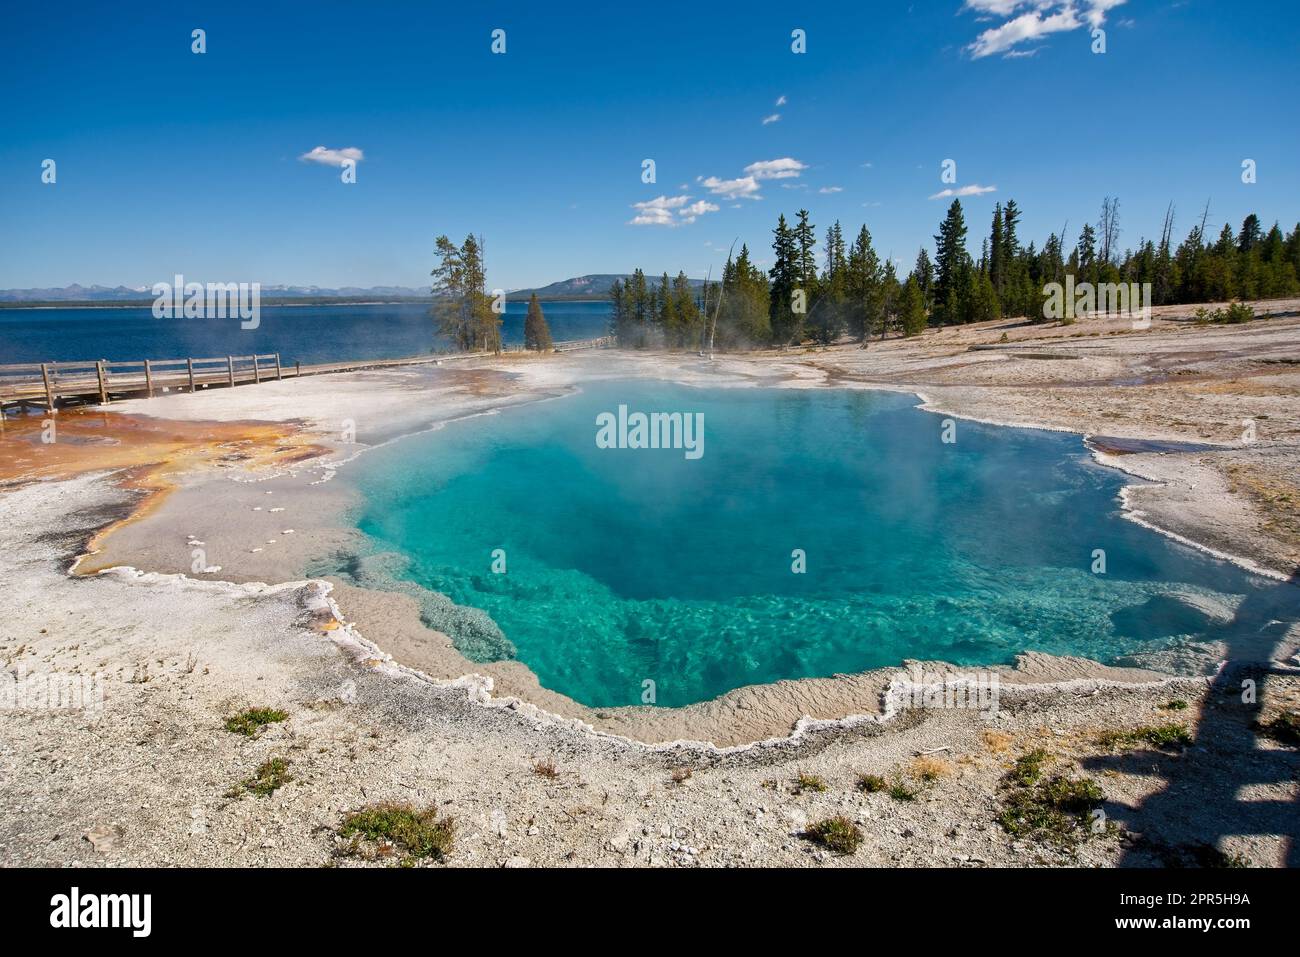 La piscine noire du bassin West Thumb Geyser, une source d'eau chaude turquoise profonde dans le parc national de Yellowstone, à côté du lac Yellowstone Banque D'Images